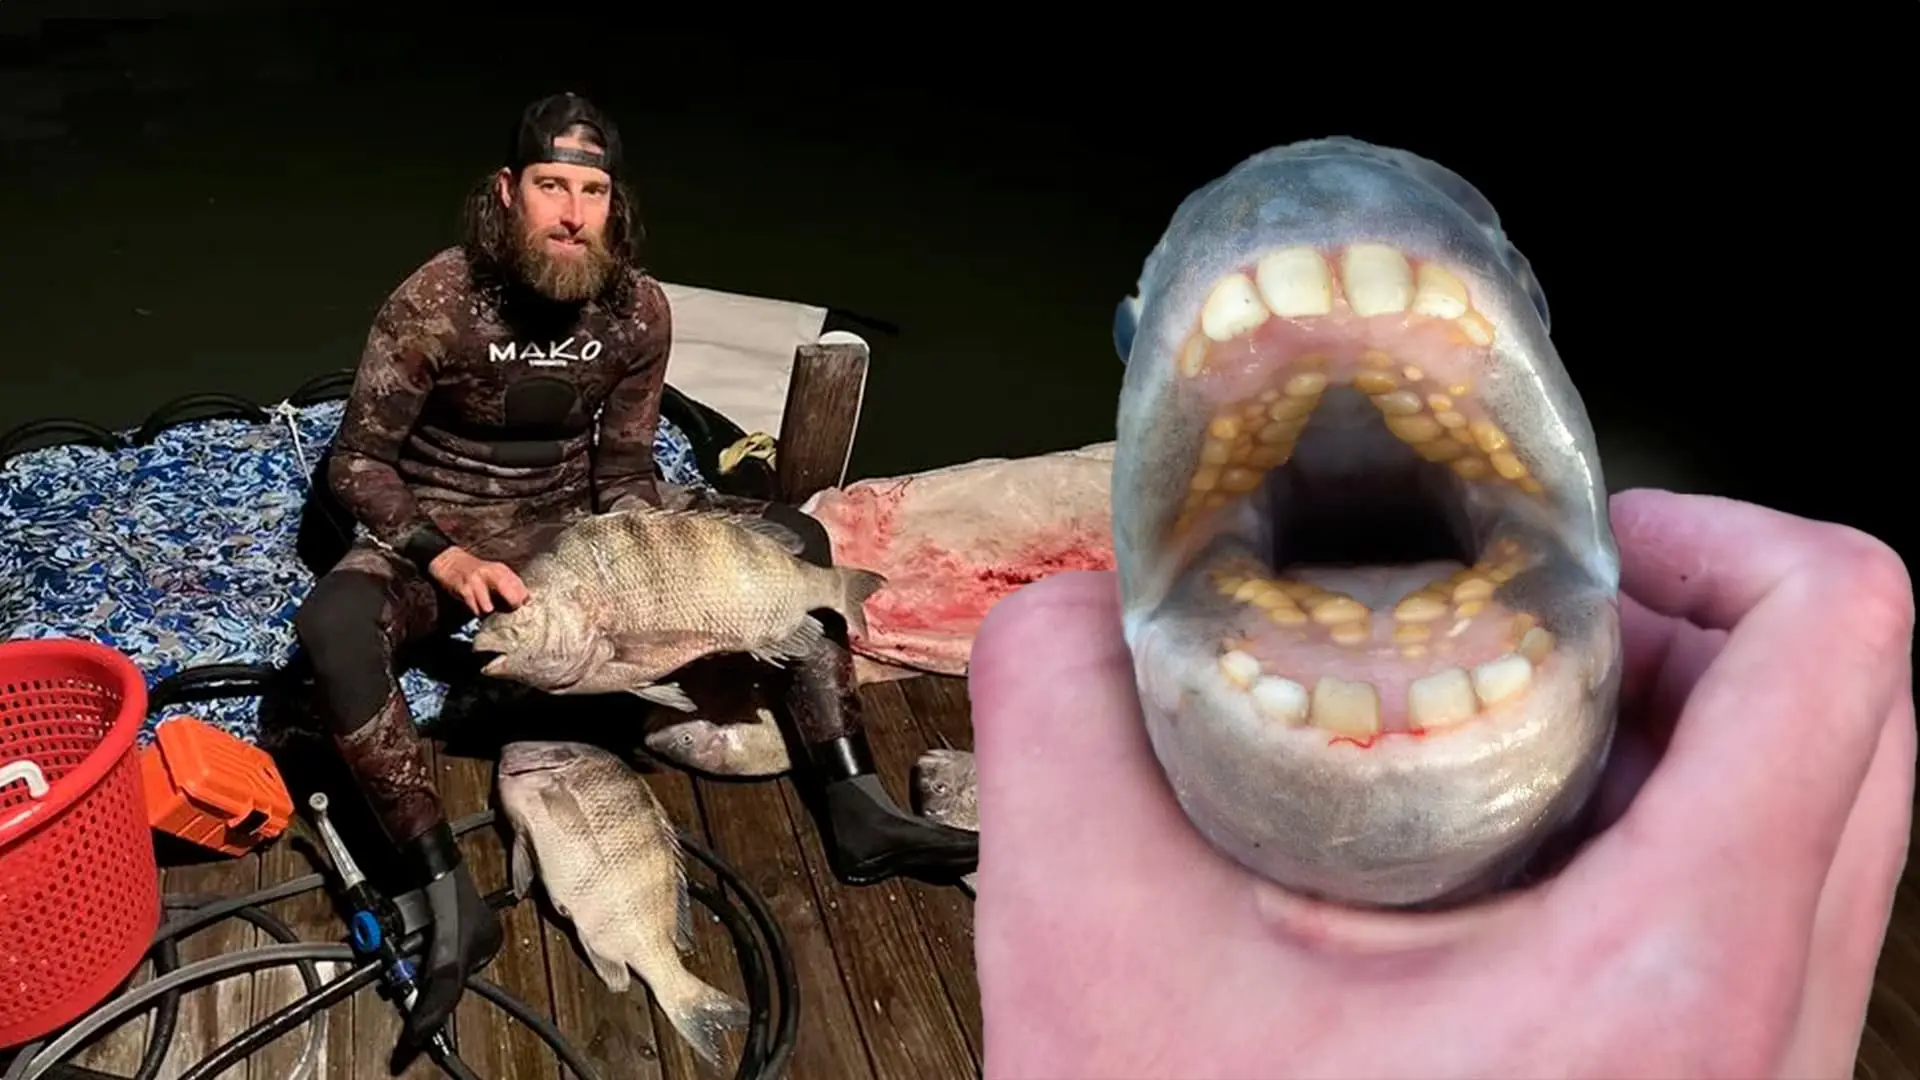 Peixe com dentes humanos e maior peso, pescador bate recorde mundial